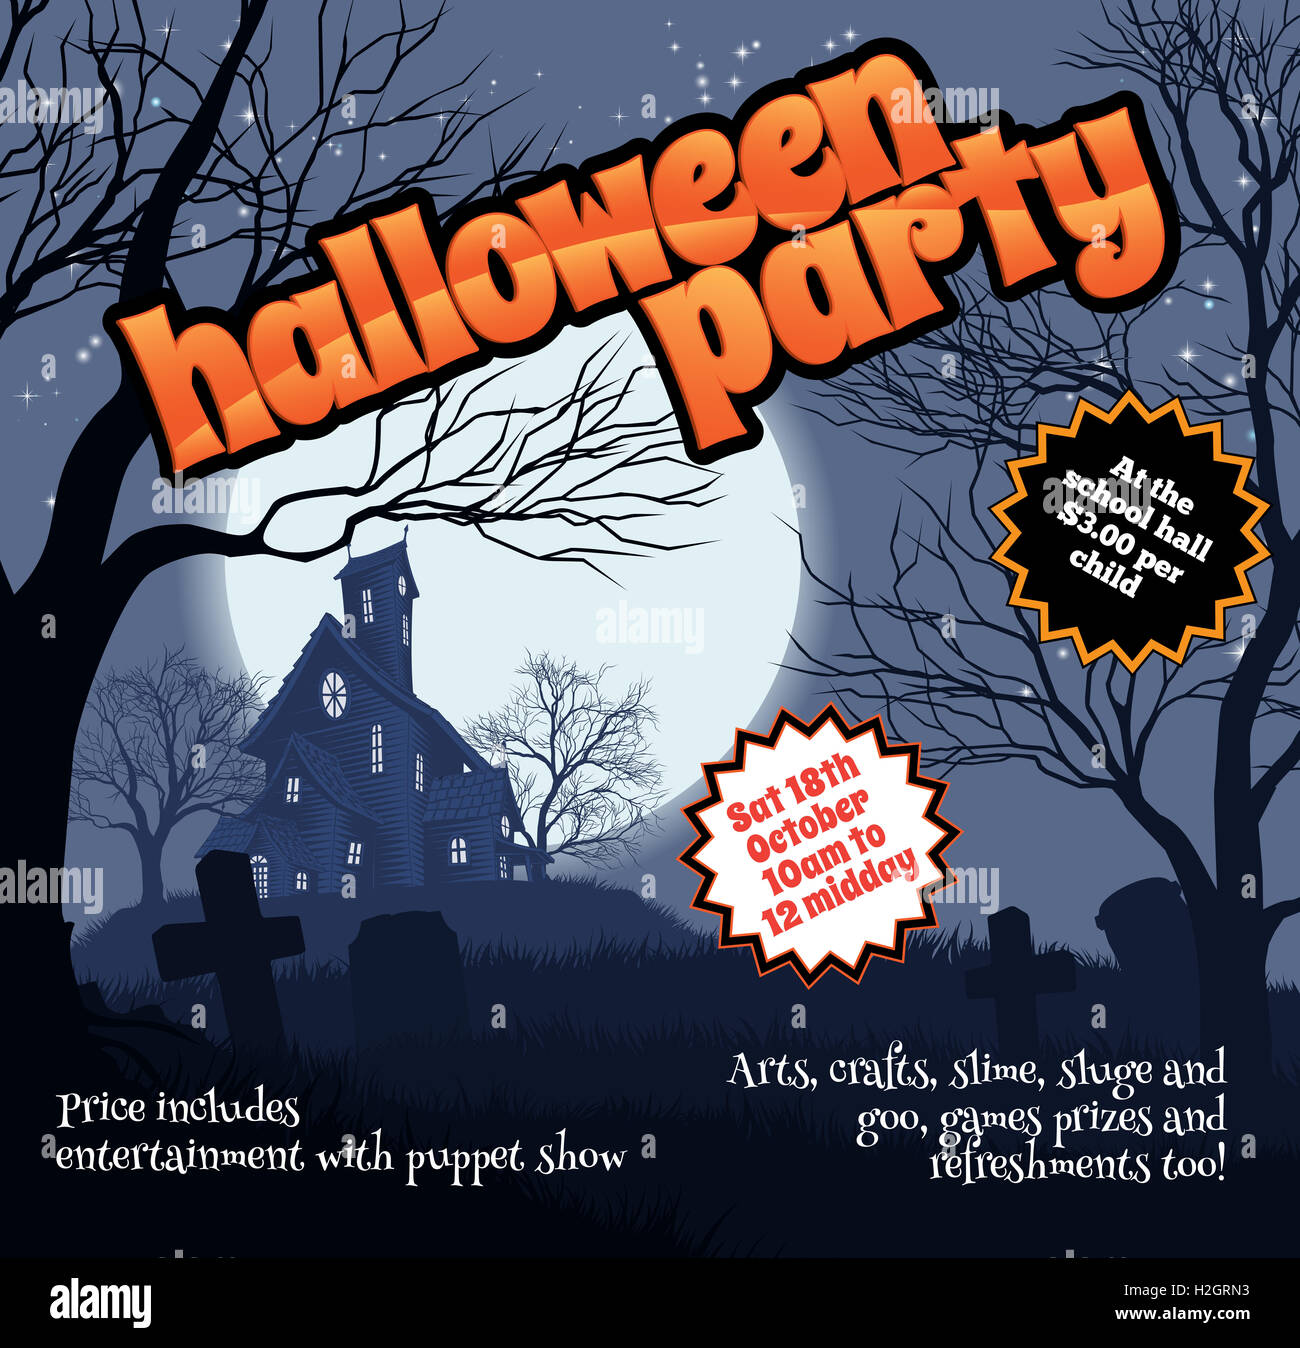 Une Halloween party flyer notice avec une maison hantée fantasmagorique et cimetière Banque D'Images